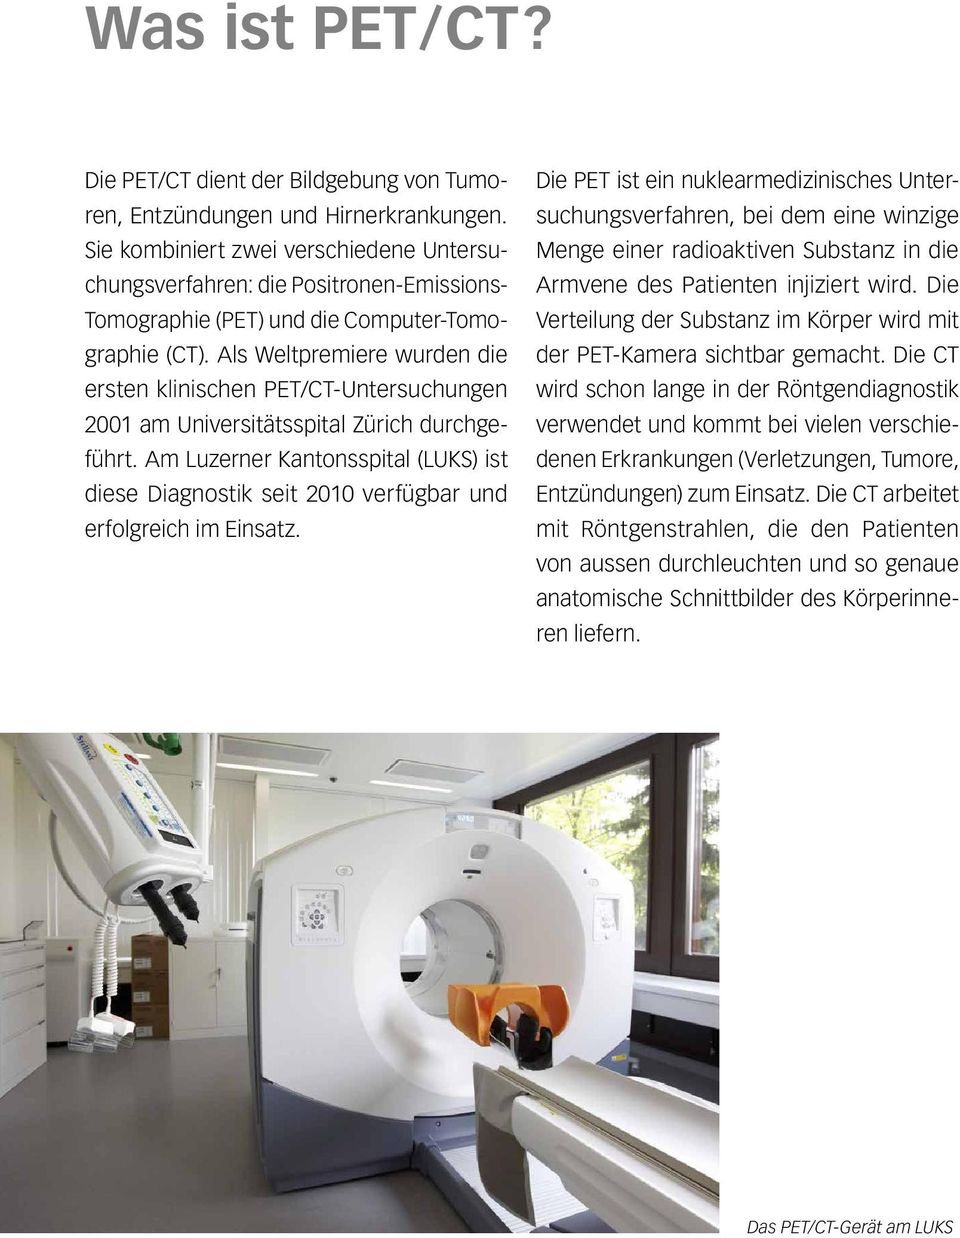 Als Weltpremiere wurden die ersten klinischen PET/CT-Untersuchungen 2001 am Universitätsspital Zürich durchgeführt.